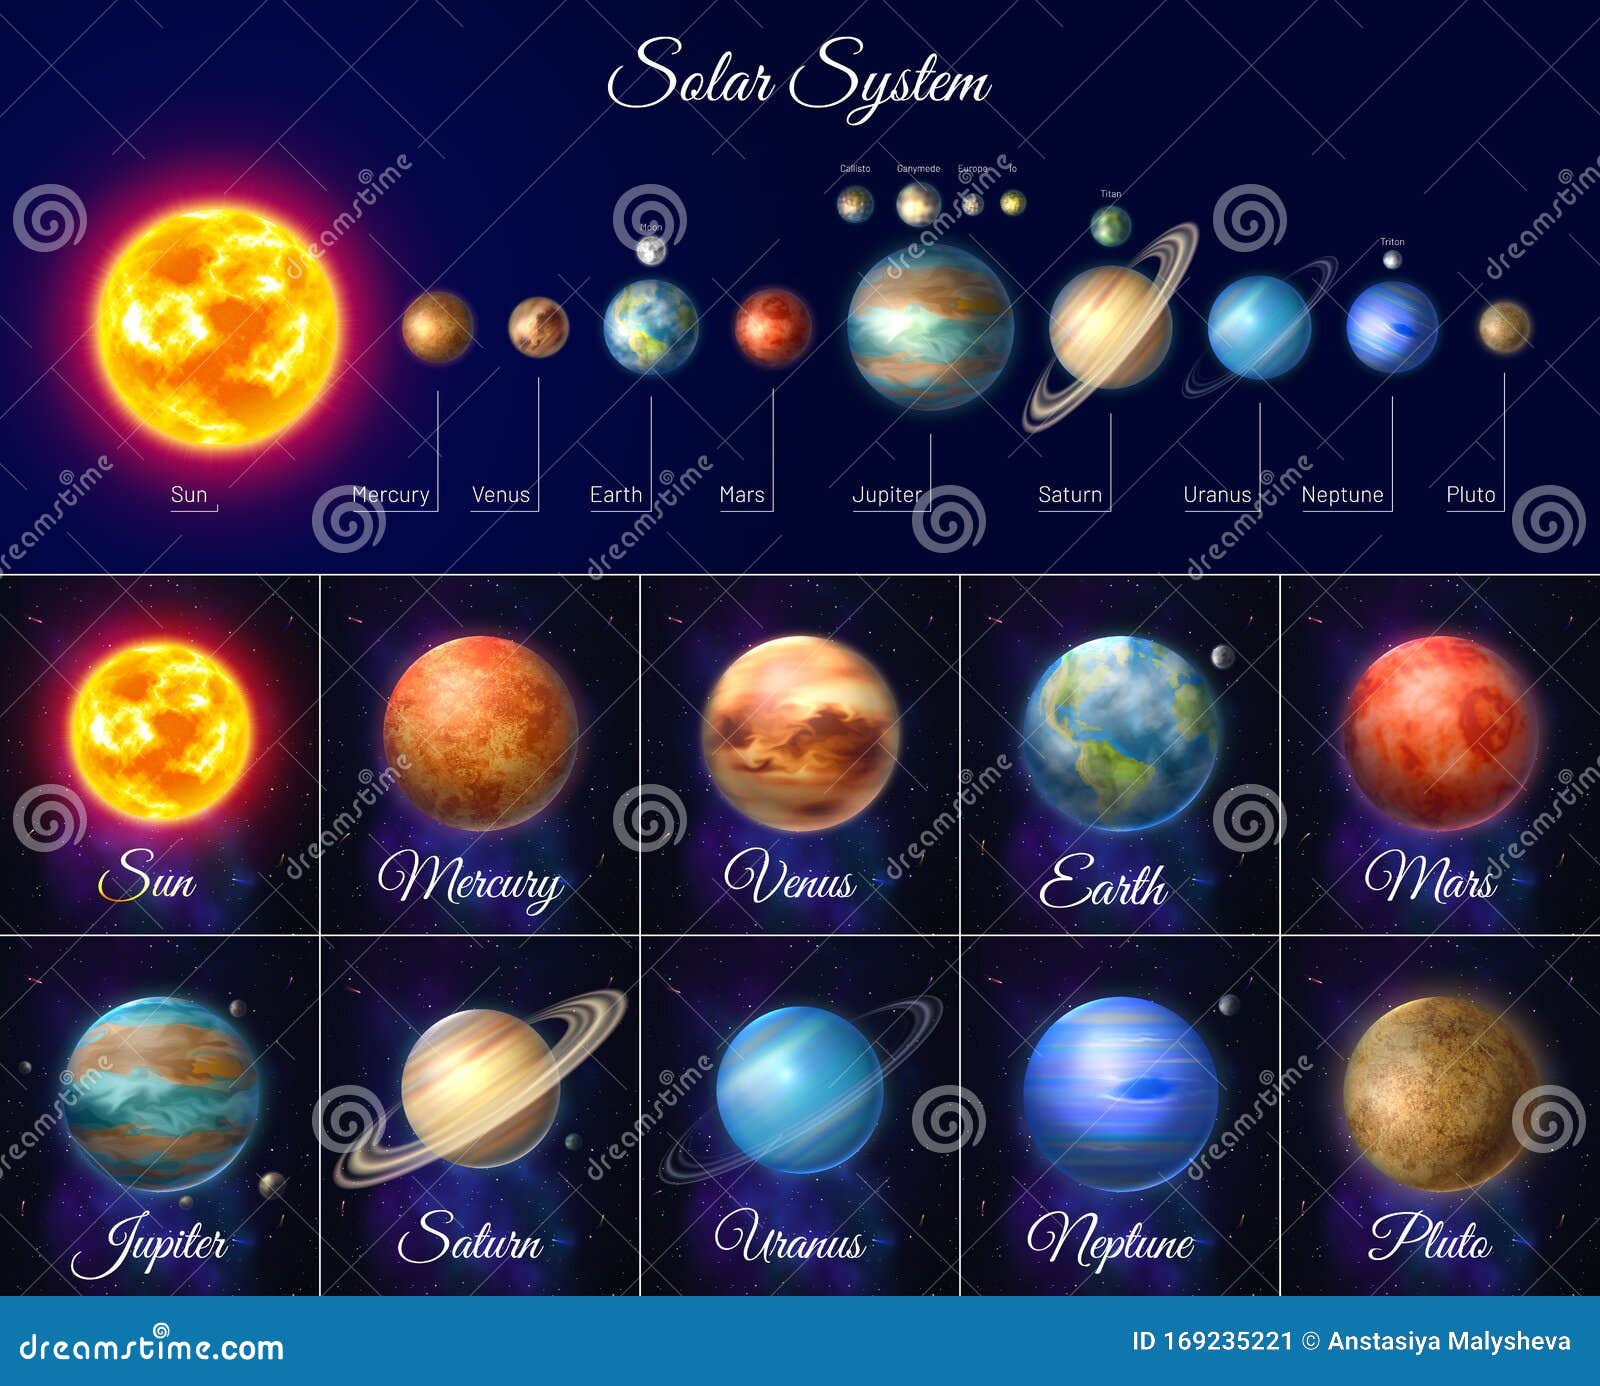 Combien de planètes y a-t-il dans le système solaire ? Scott, 9 ans. -  Images Doc